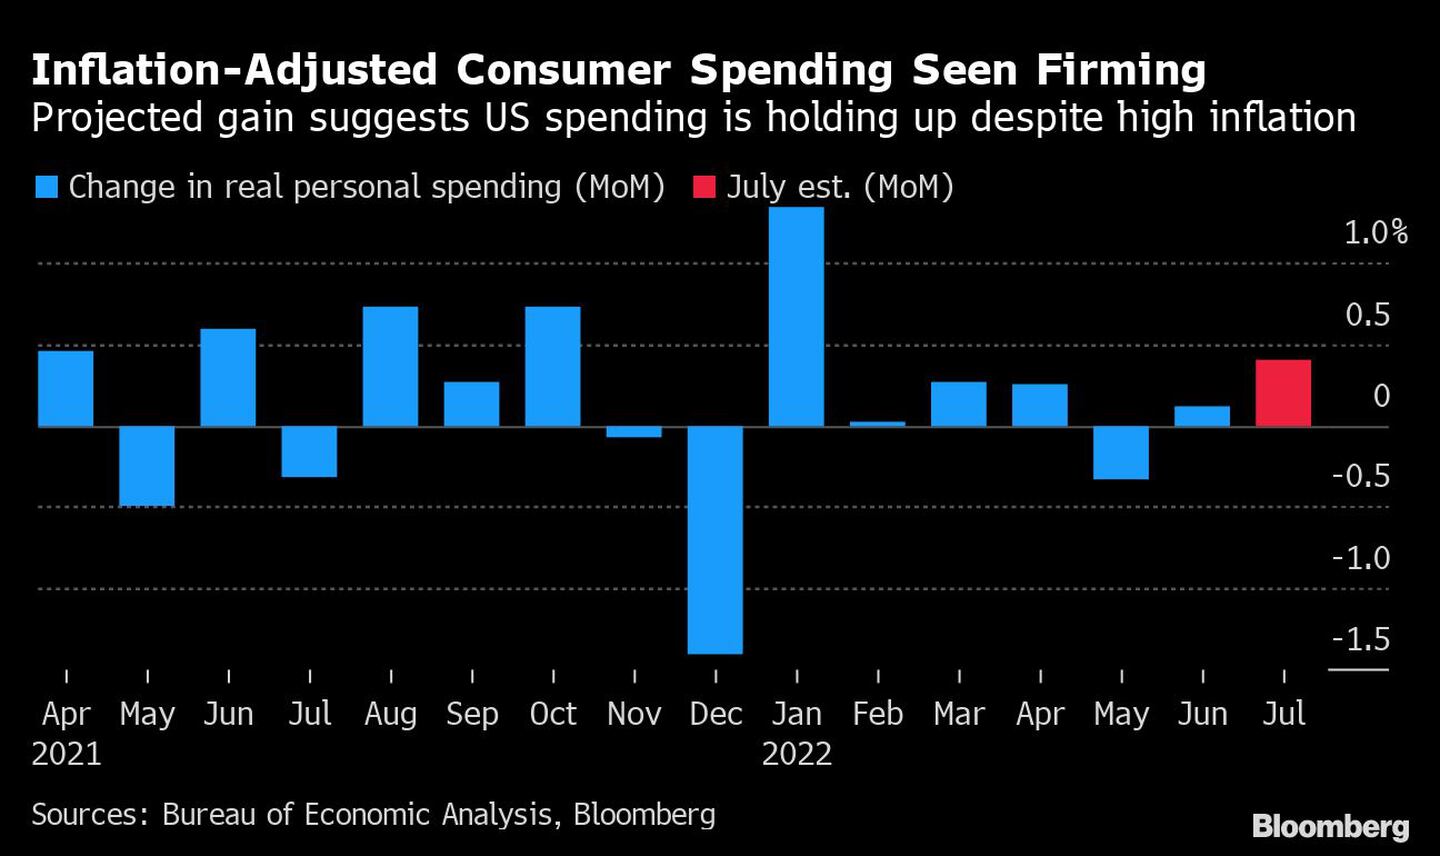 El aumento previsto sugiere que el gasto estadounidense se mantiene a pesar de la elevada inflacióndfd